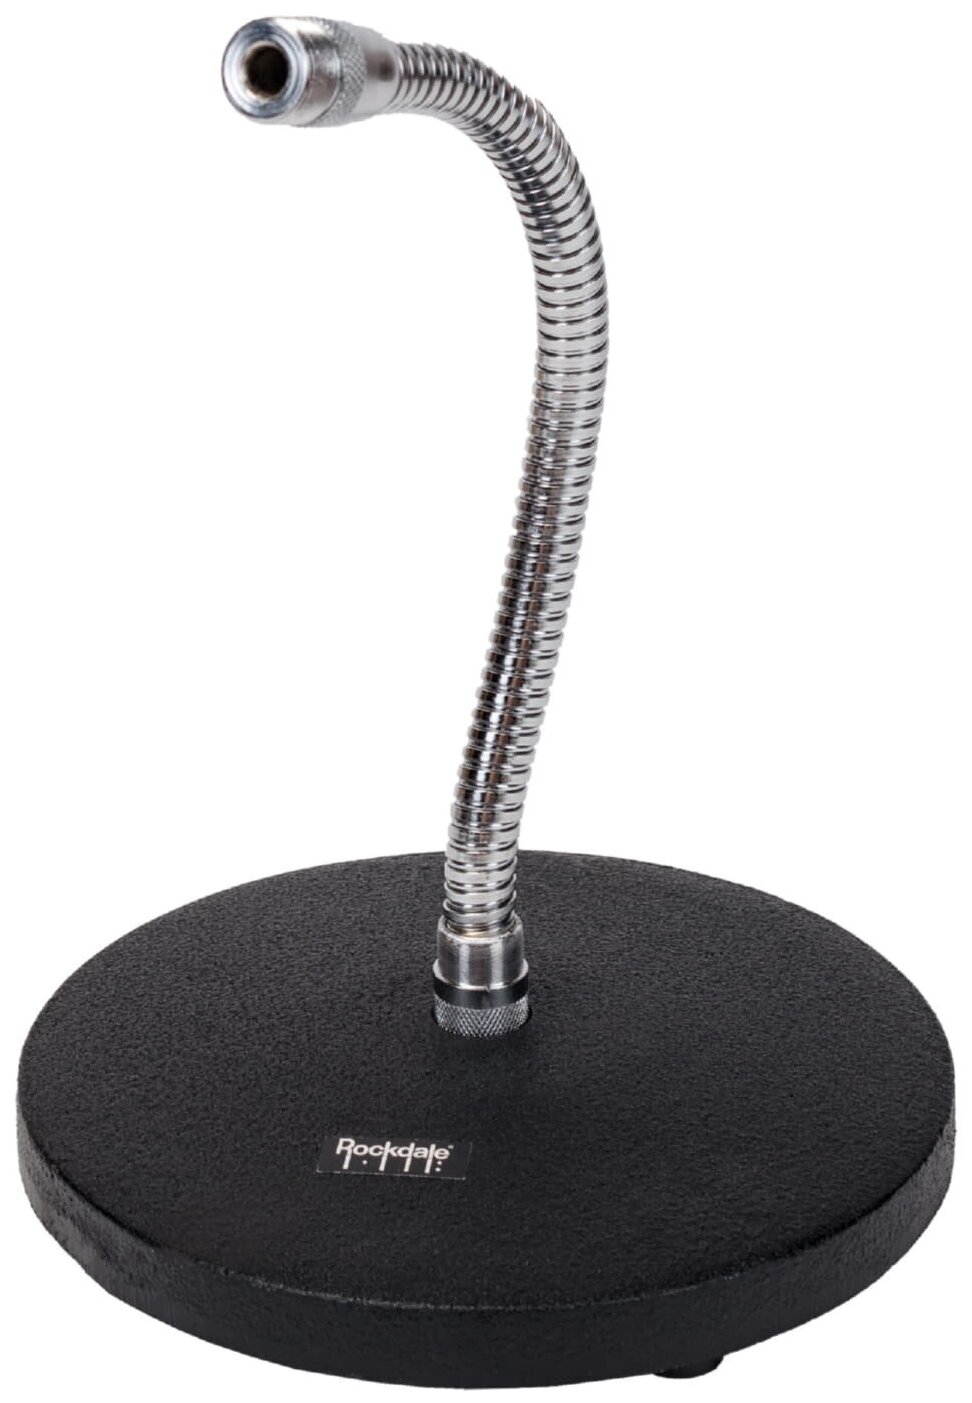 ROCKDALE TM31 настольная микрофонная стойка на кругл. основании (д 15,5 см) с держателем gooseneck (дл. 254 мм)